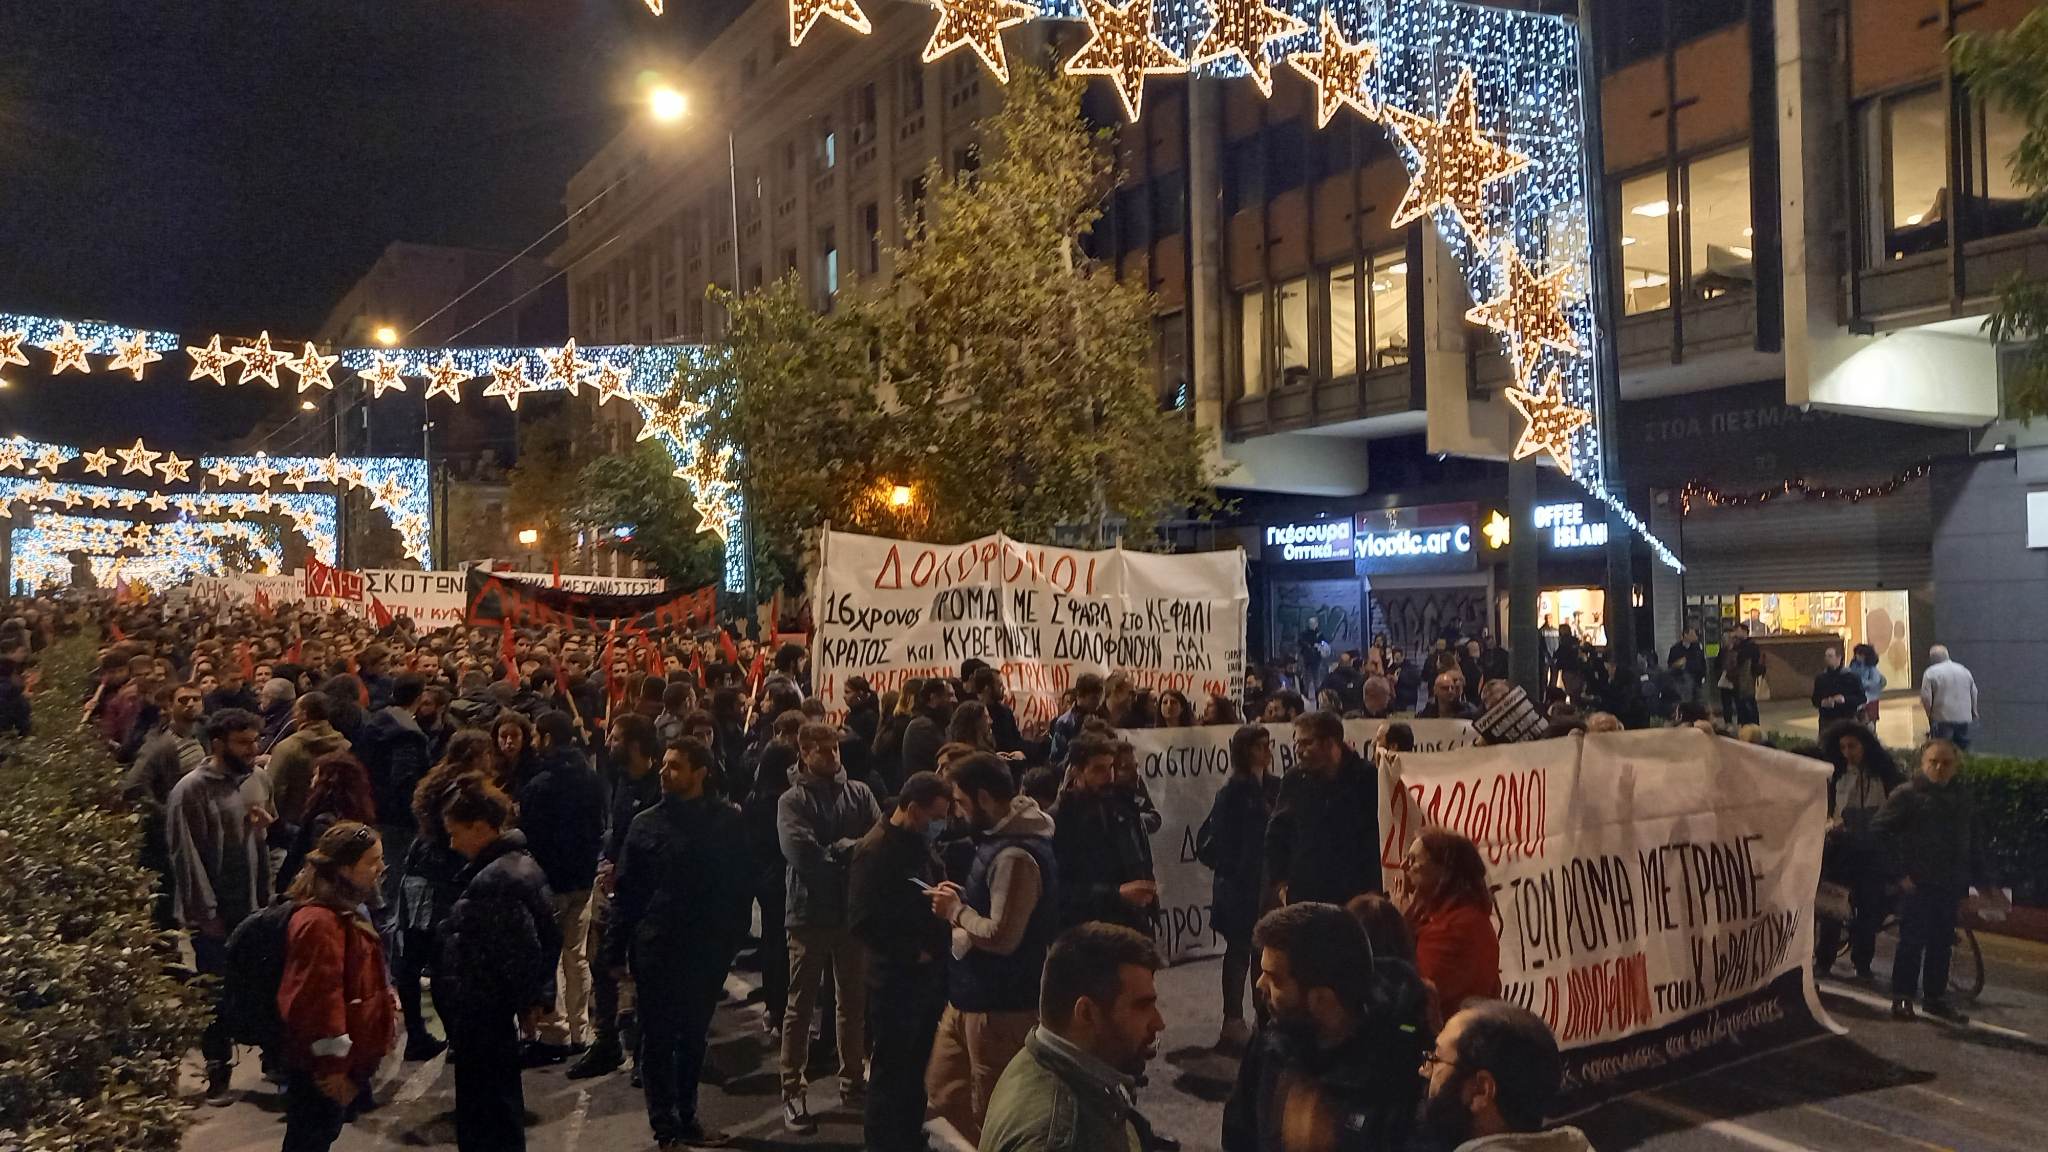 16χρονος Ρομά: Πορεία στο κέντρο της Αθήνας - «ΔΗΚΕΟΣΙΝΗ για τον Κώστα Φραγκούλη»